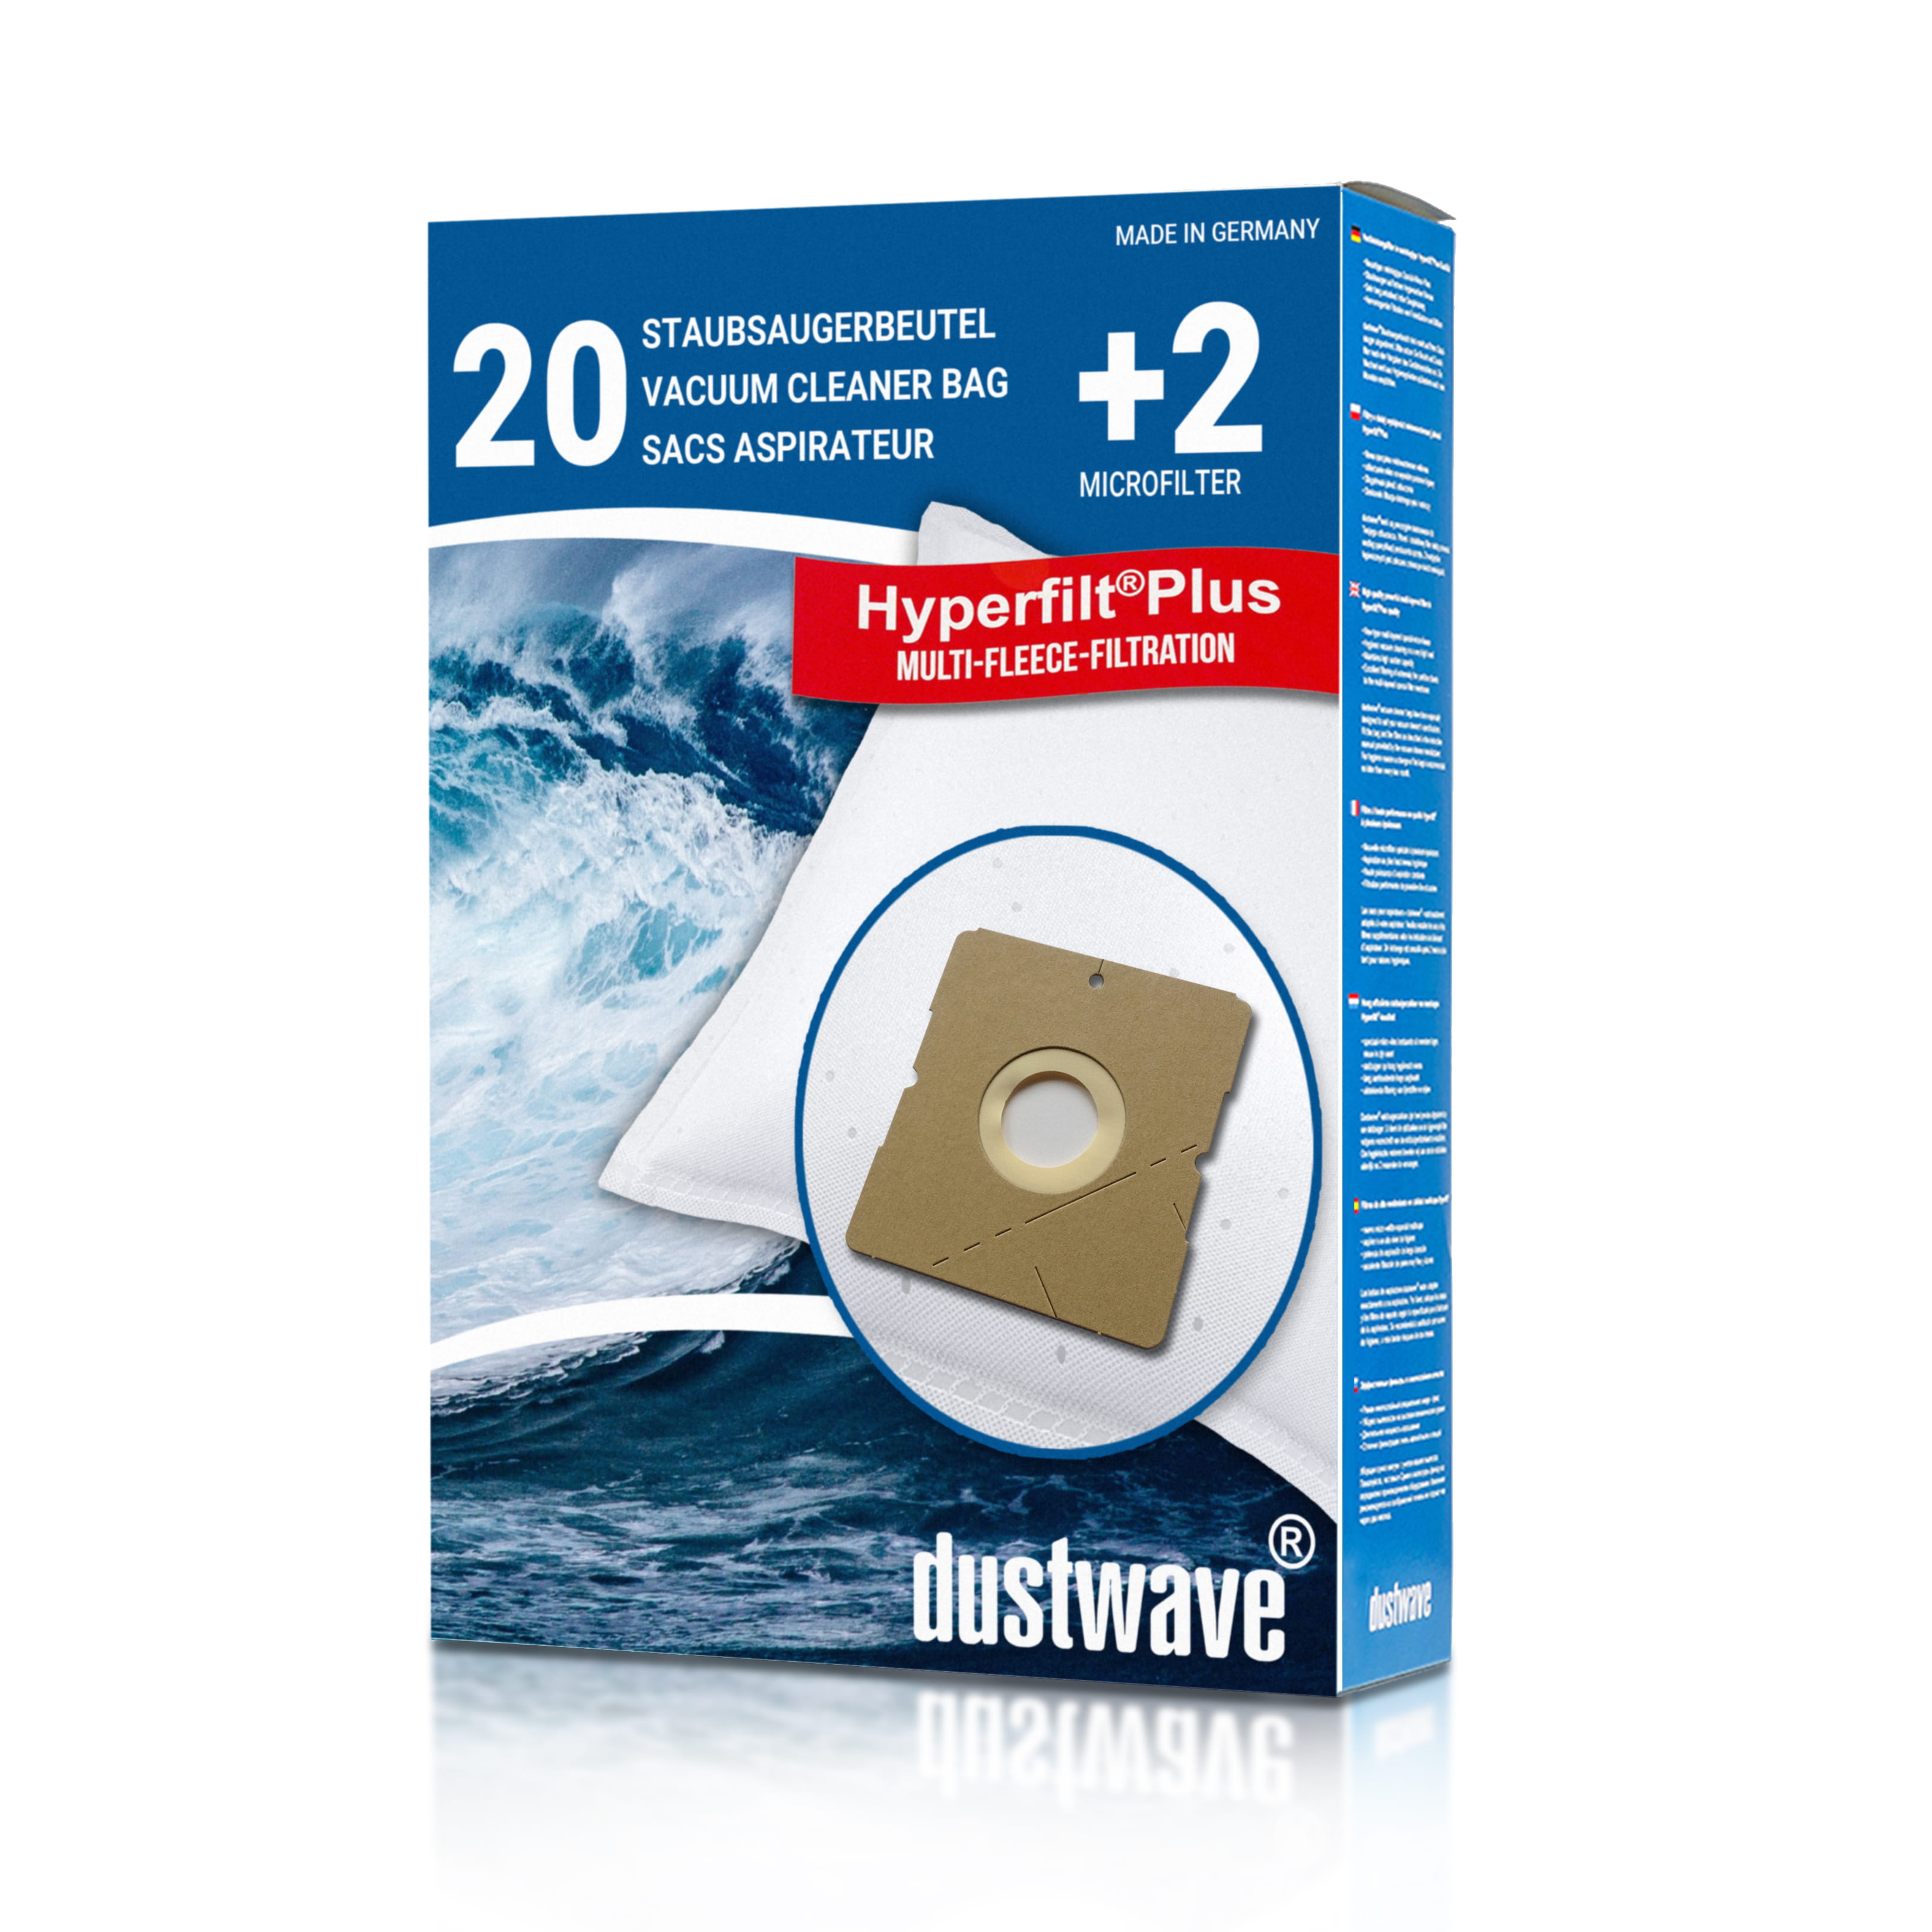 Dustwave® 20 Staubsaugerbeutel für Hoover SX9720 011 - hocheffizient, mehrlagiges Mikrovlies mit Hygieneverschluss - Made in Germany